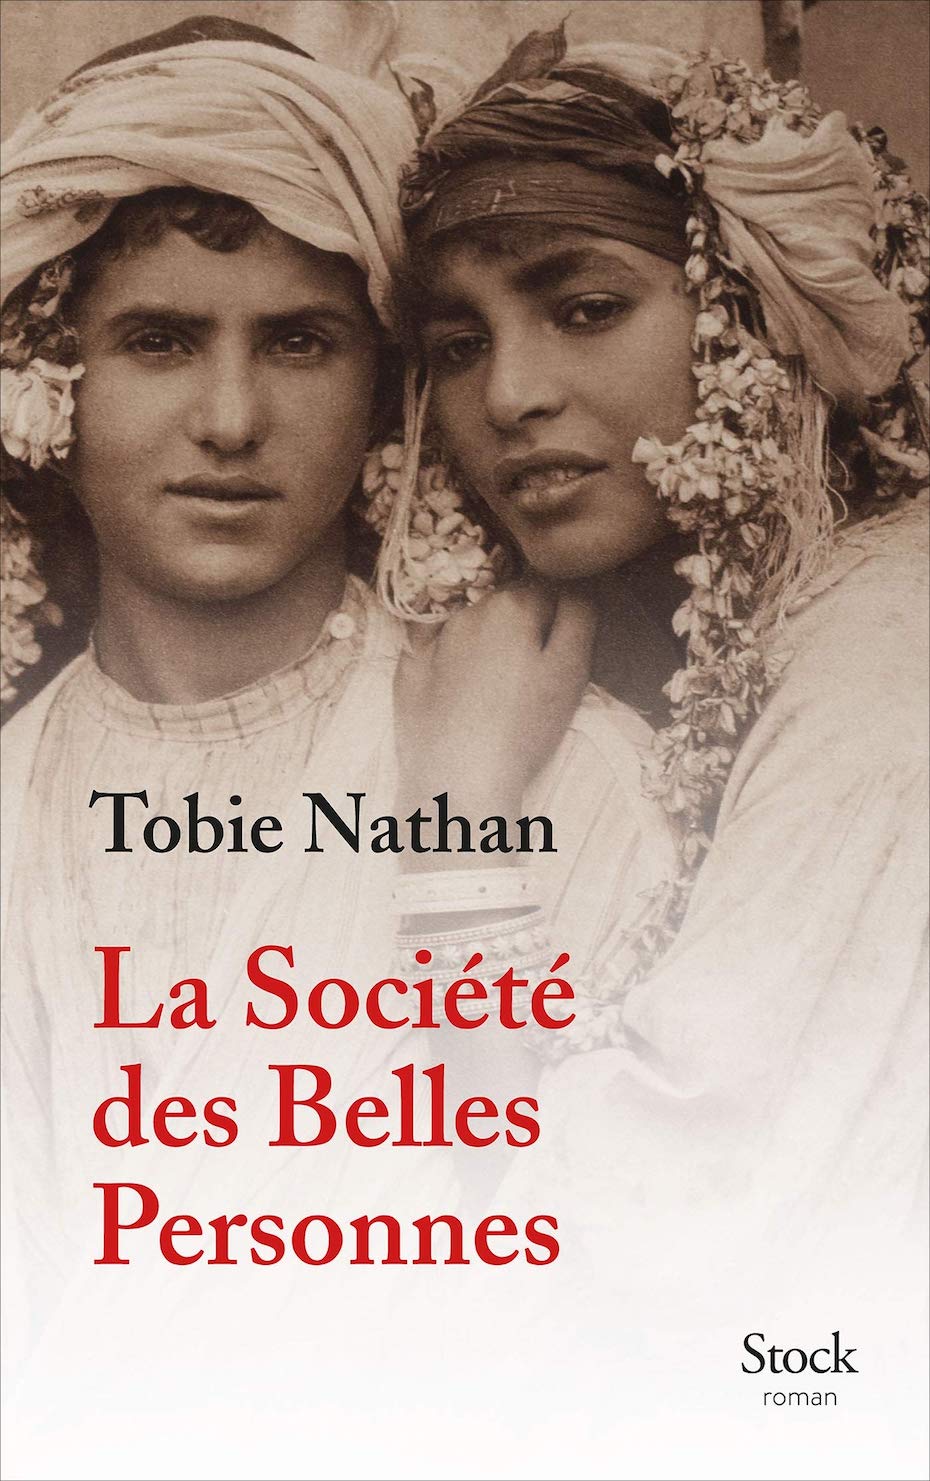 Tobie Nathan, La Société des Belles Personnes (Stock)